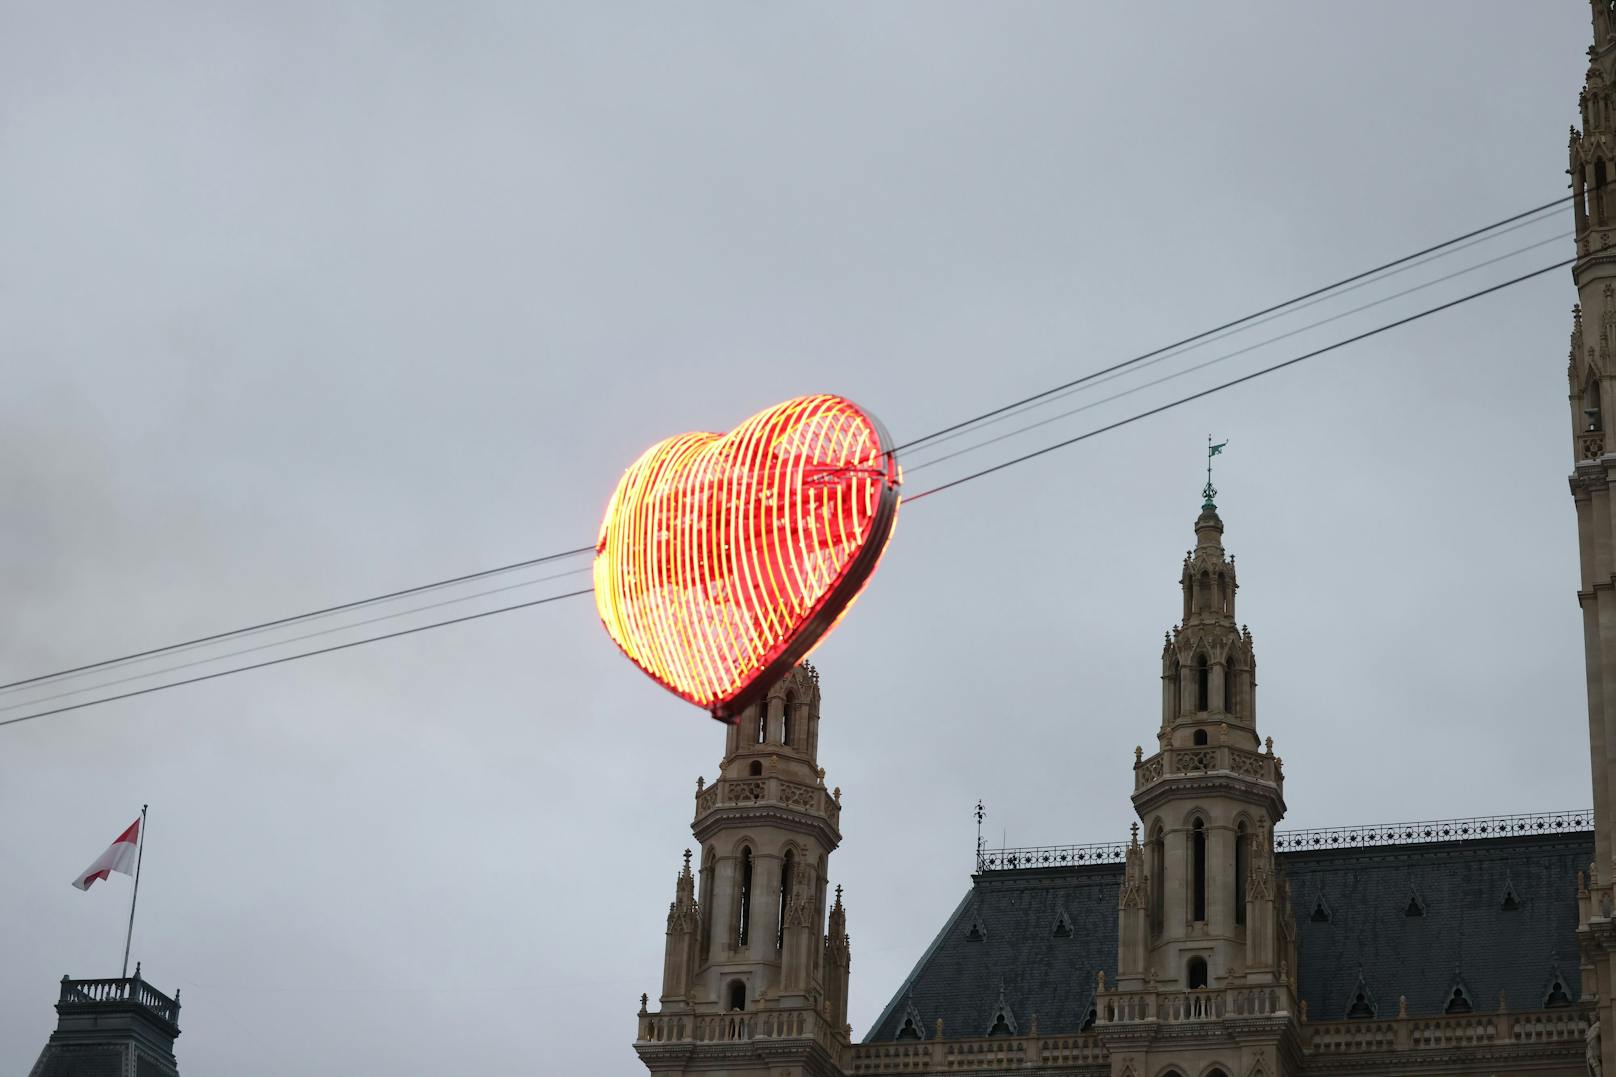 In 13 Metern Höhe fährt das Herz über den Rathausplatz.